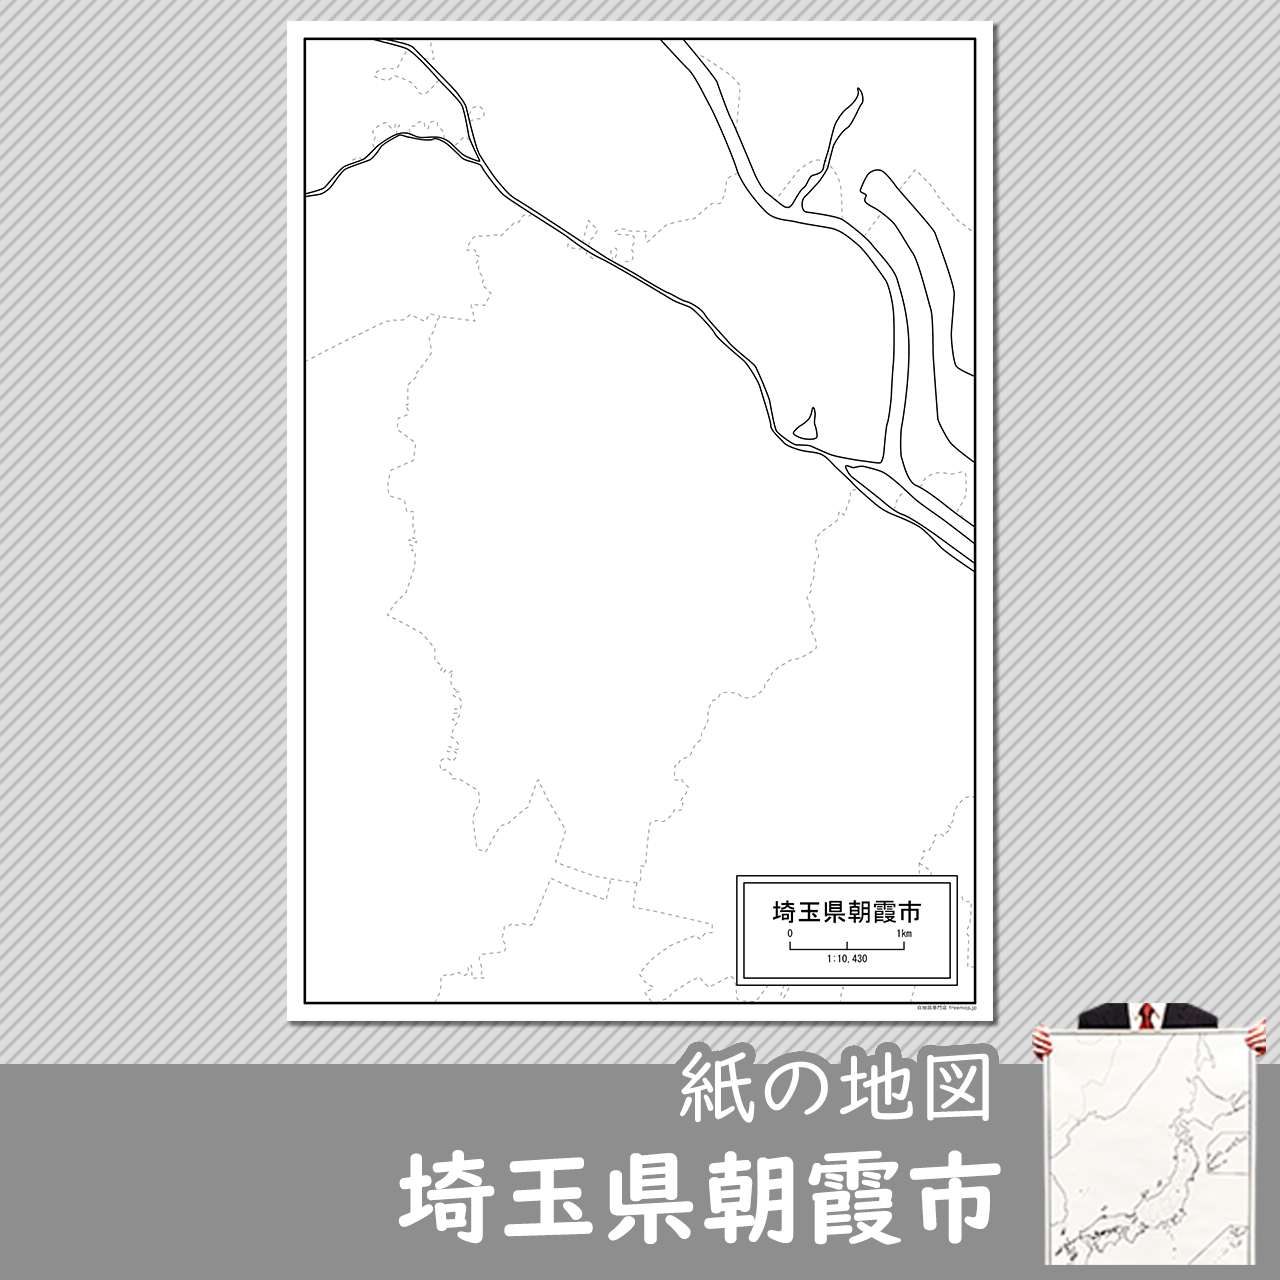 朝霞市の白地図